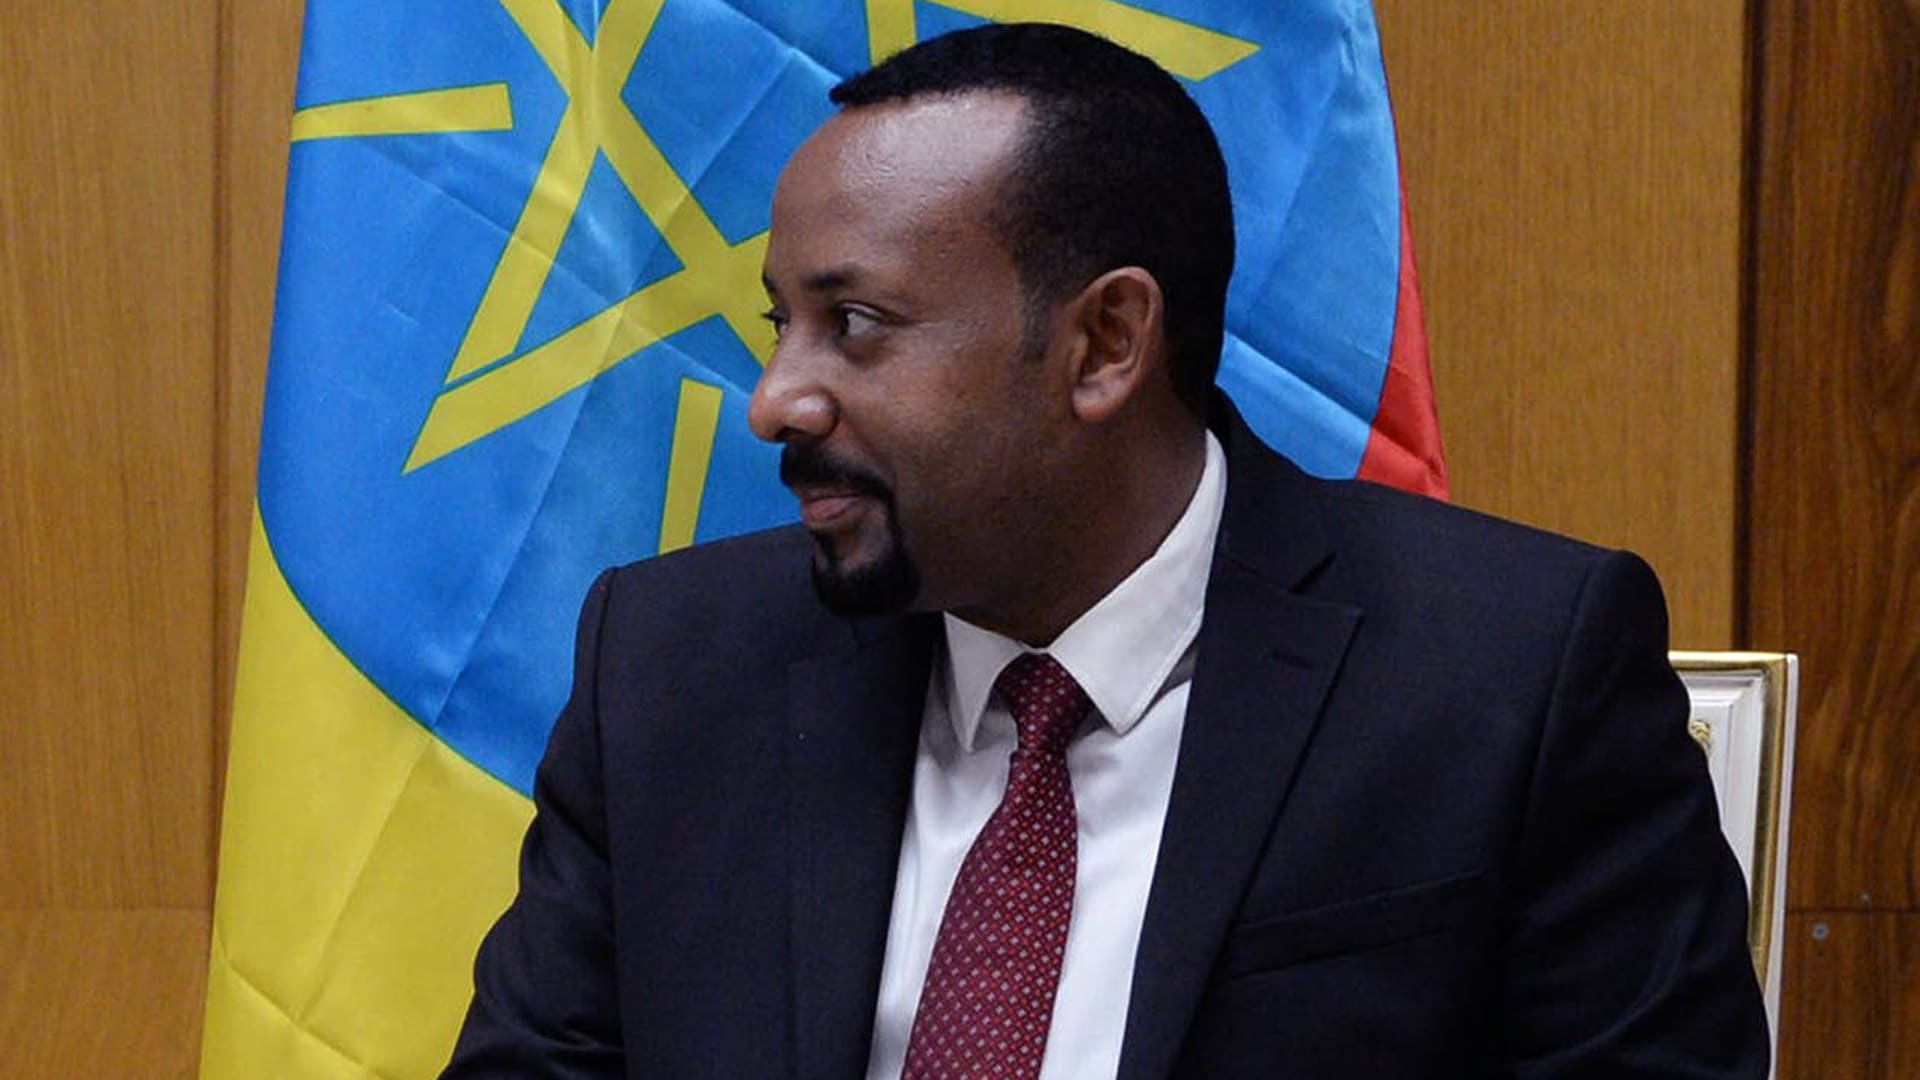 Äthiopiens Premierminister Abiy Ahmed erhielt 2019 für seine Aussöhnungspolitik mit dem Nachbarland Eritrea den Friedensnobelpreis